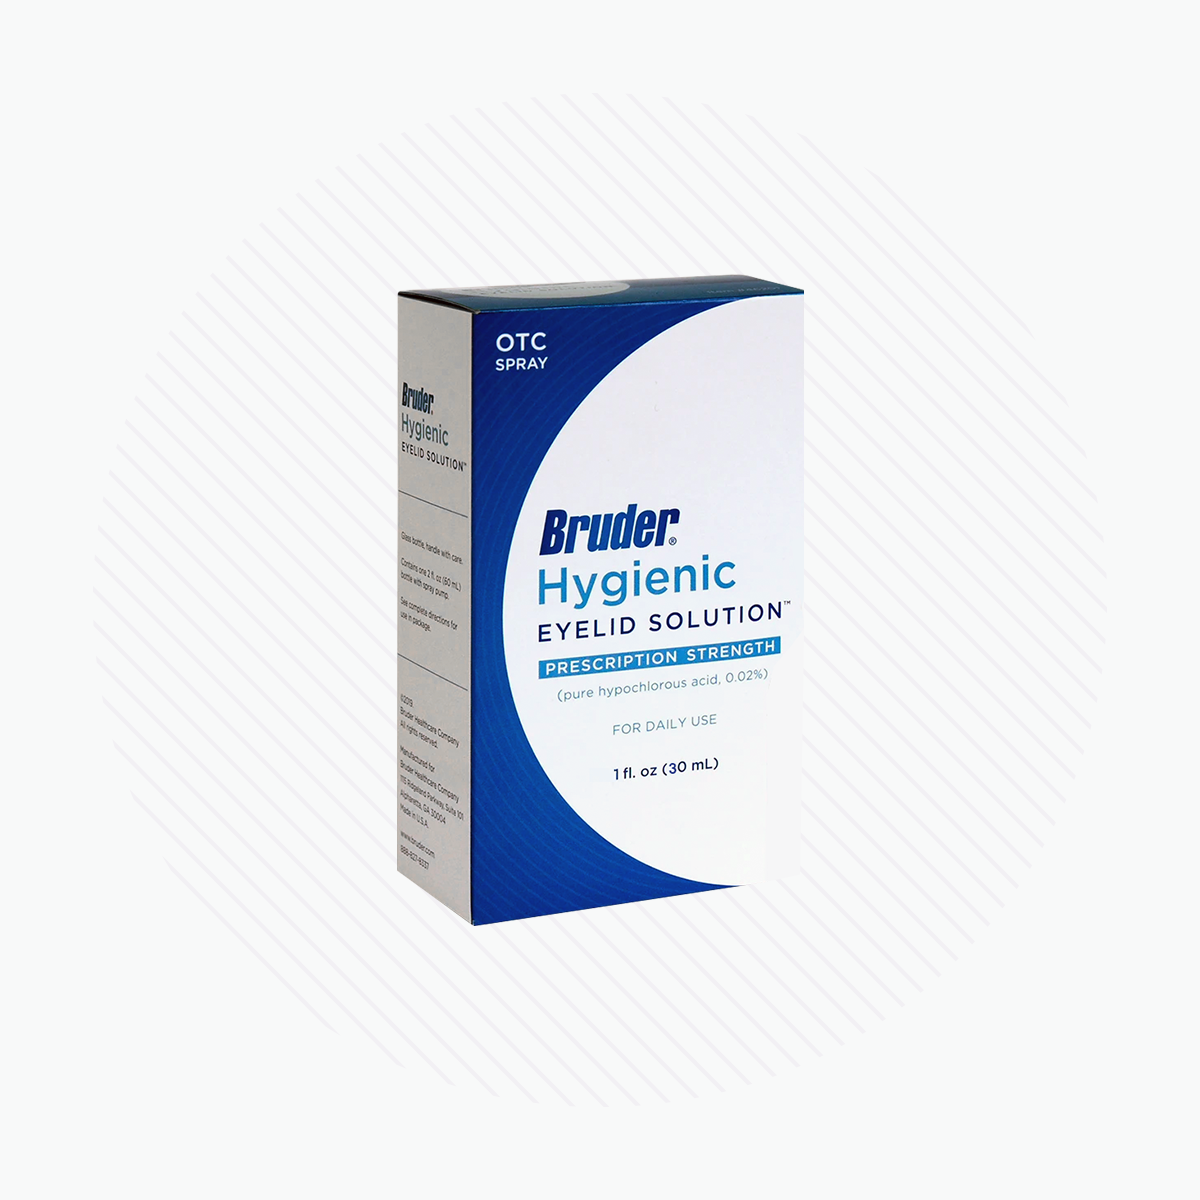 Bruder Hygienic Eyelid Solution 1 fl. oz. (30mL)